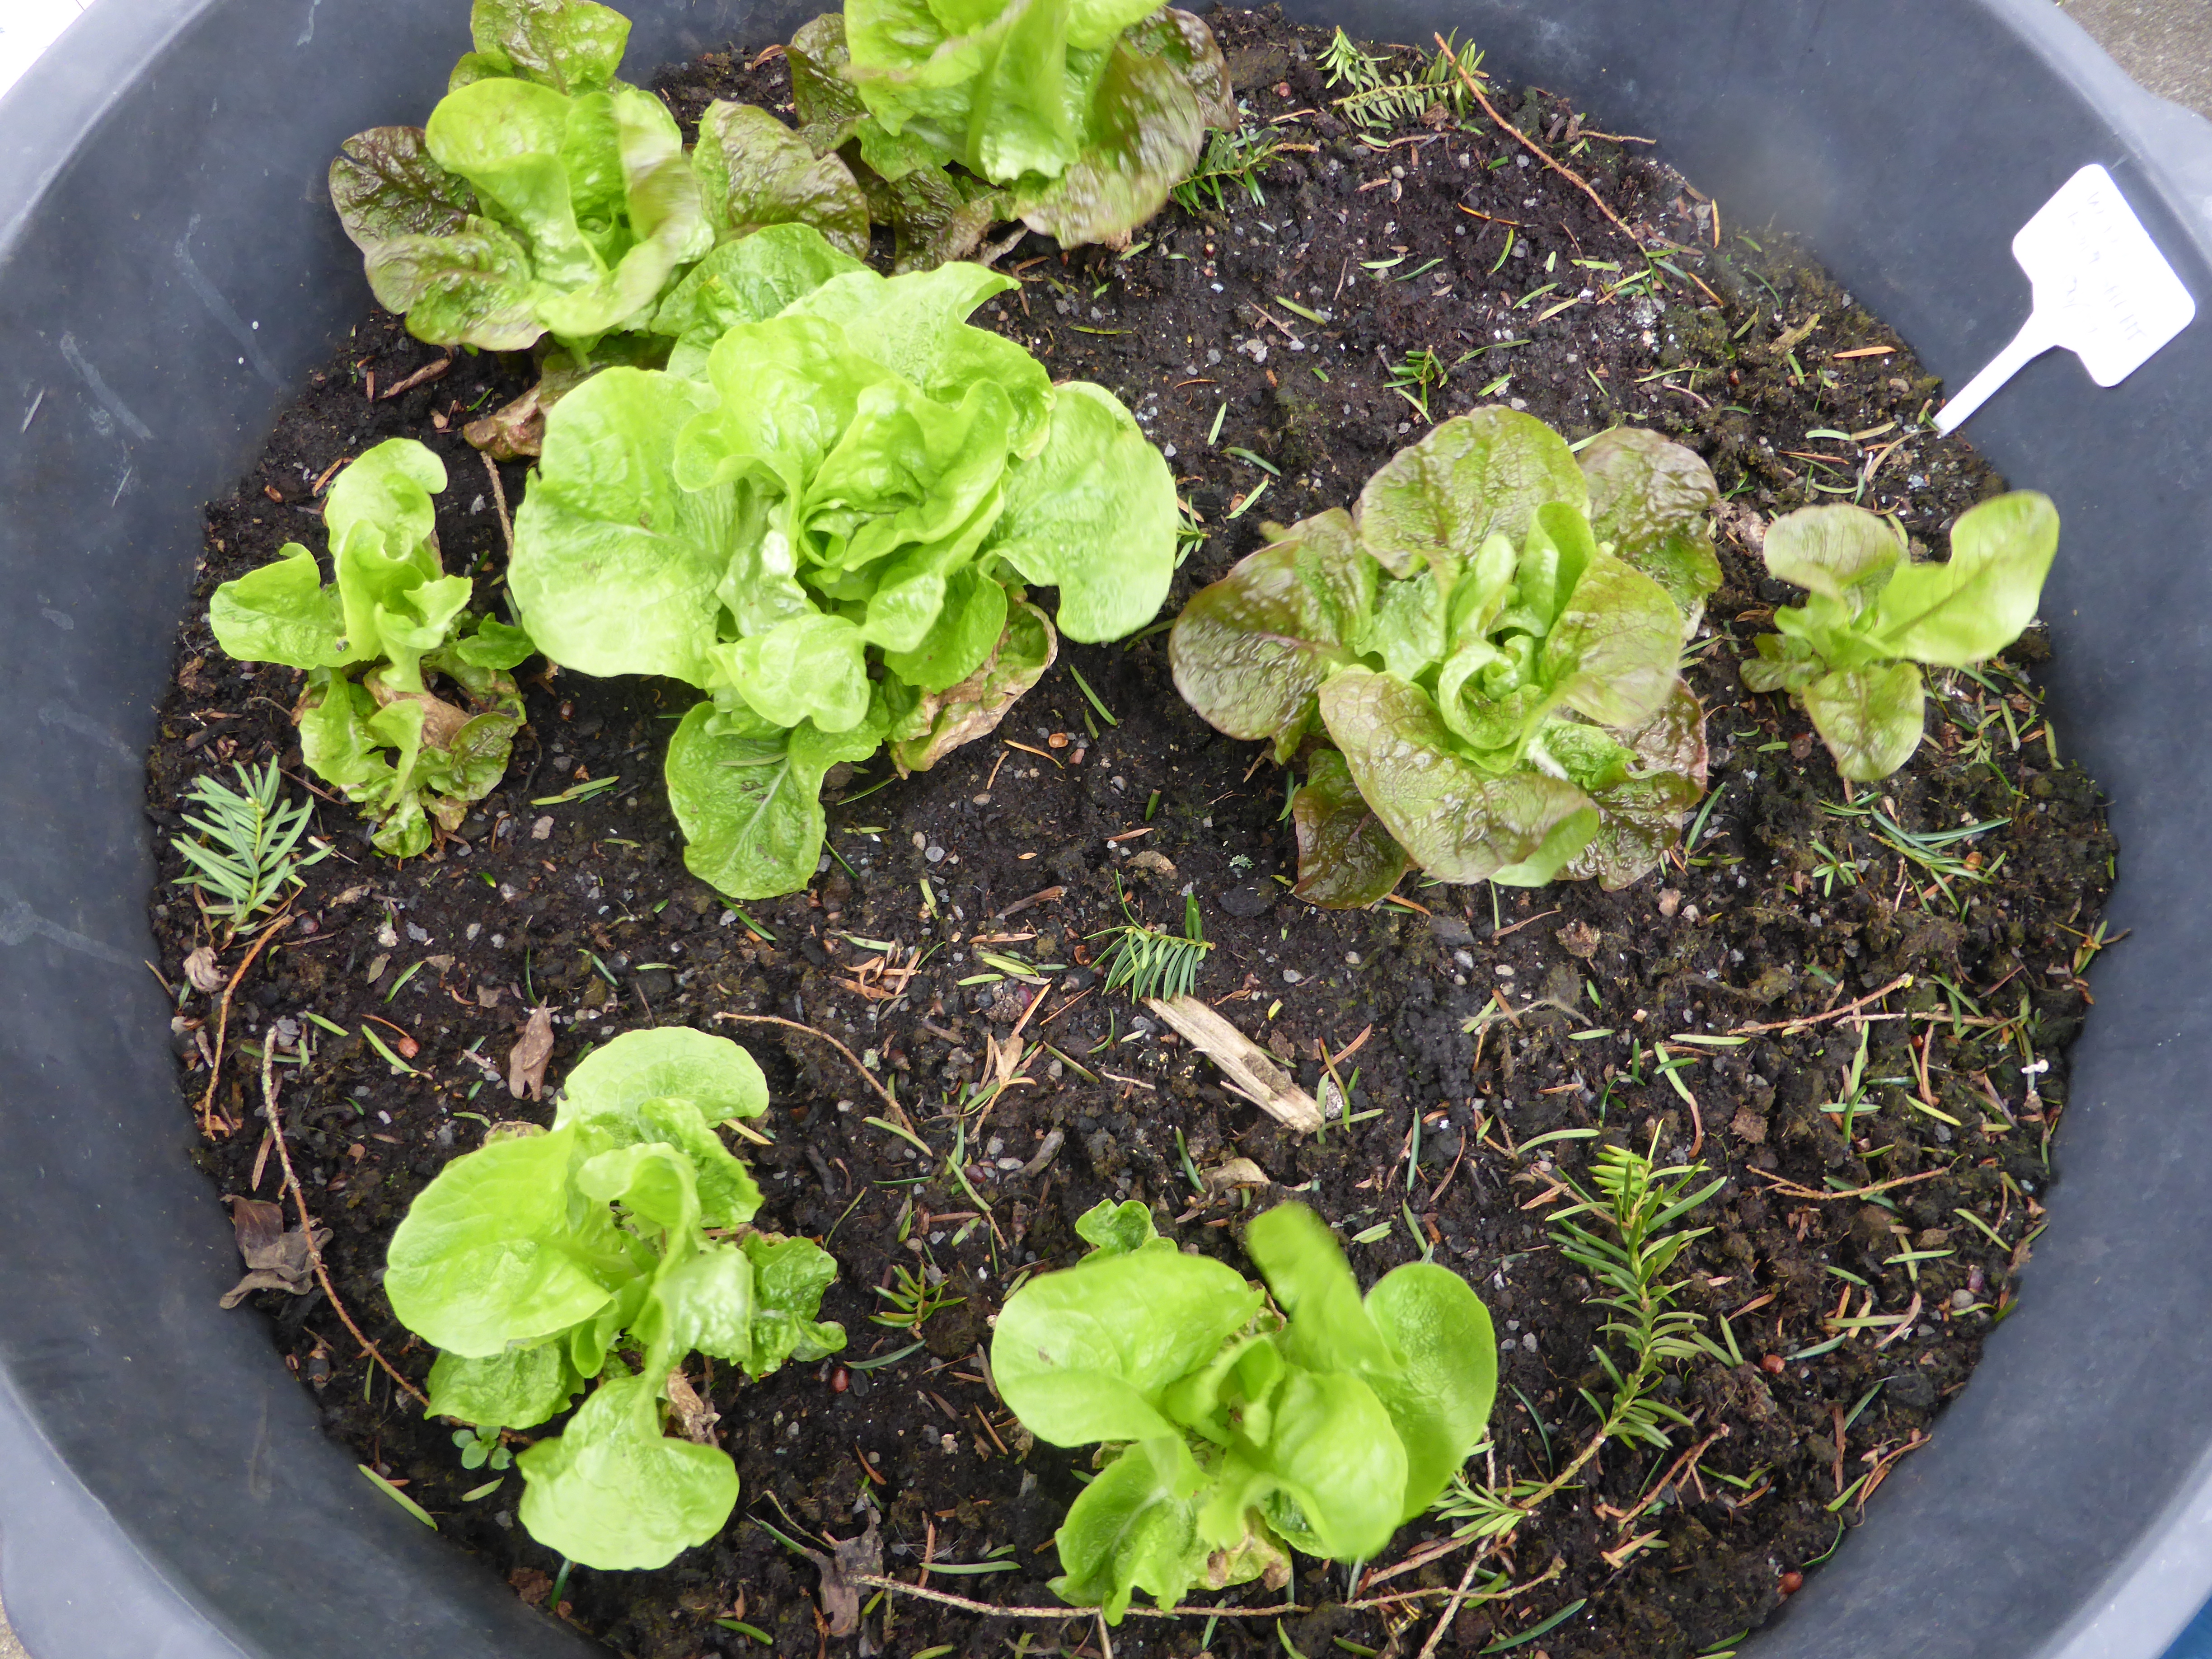 Beet oder Balkon: Salat säen, pflegen und fast das ganze Jahr ernten